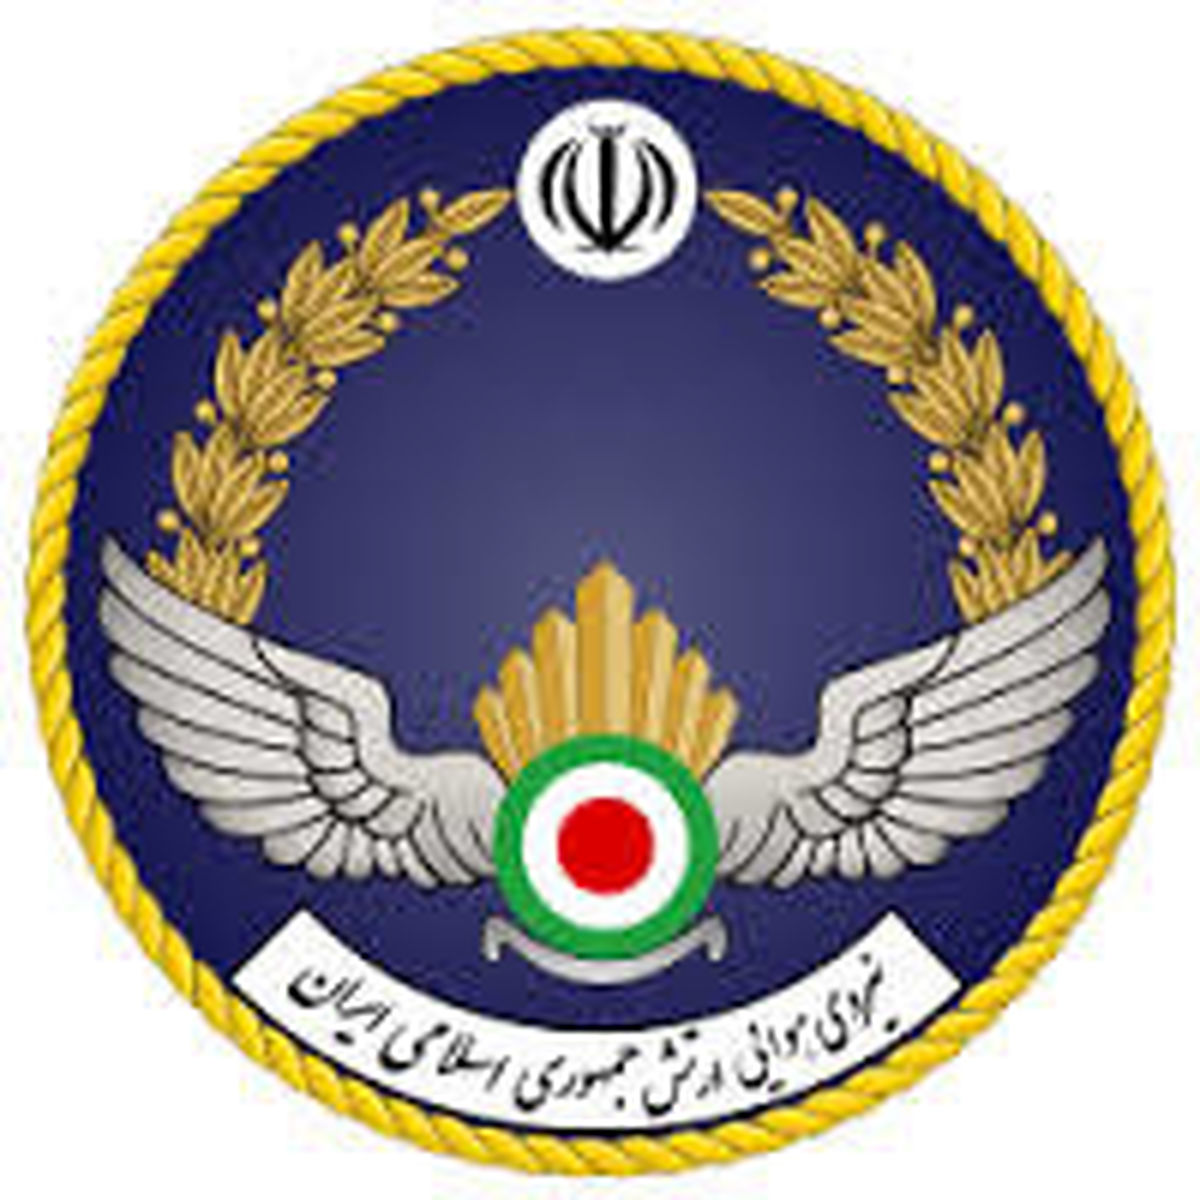 اولین فرمانده نیروی هوایی پس از پیروزی انقلاب اسلامی درگذشت